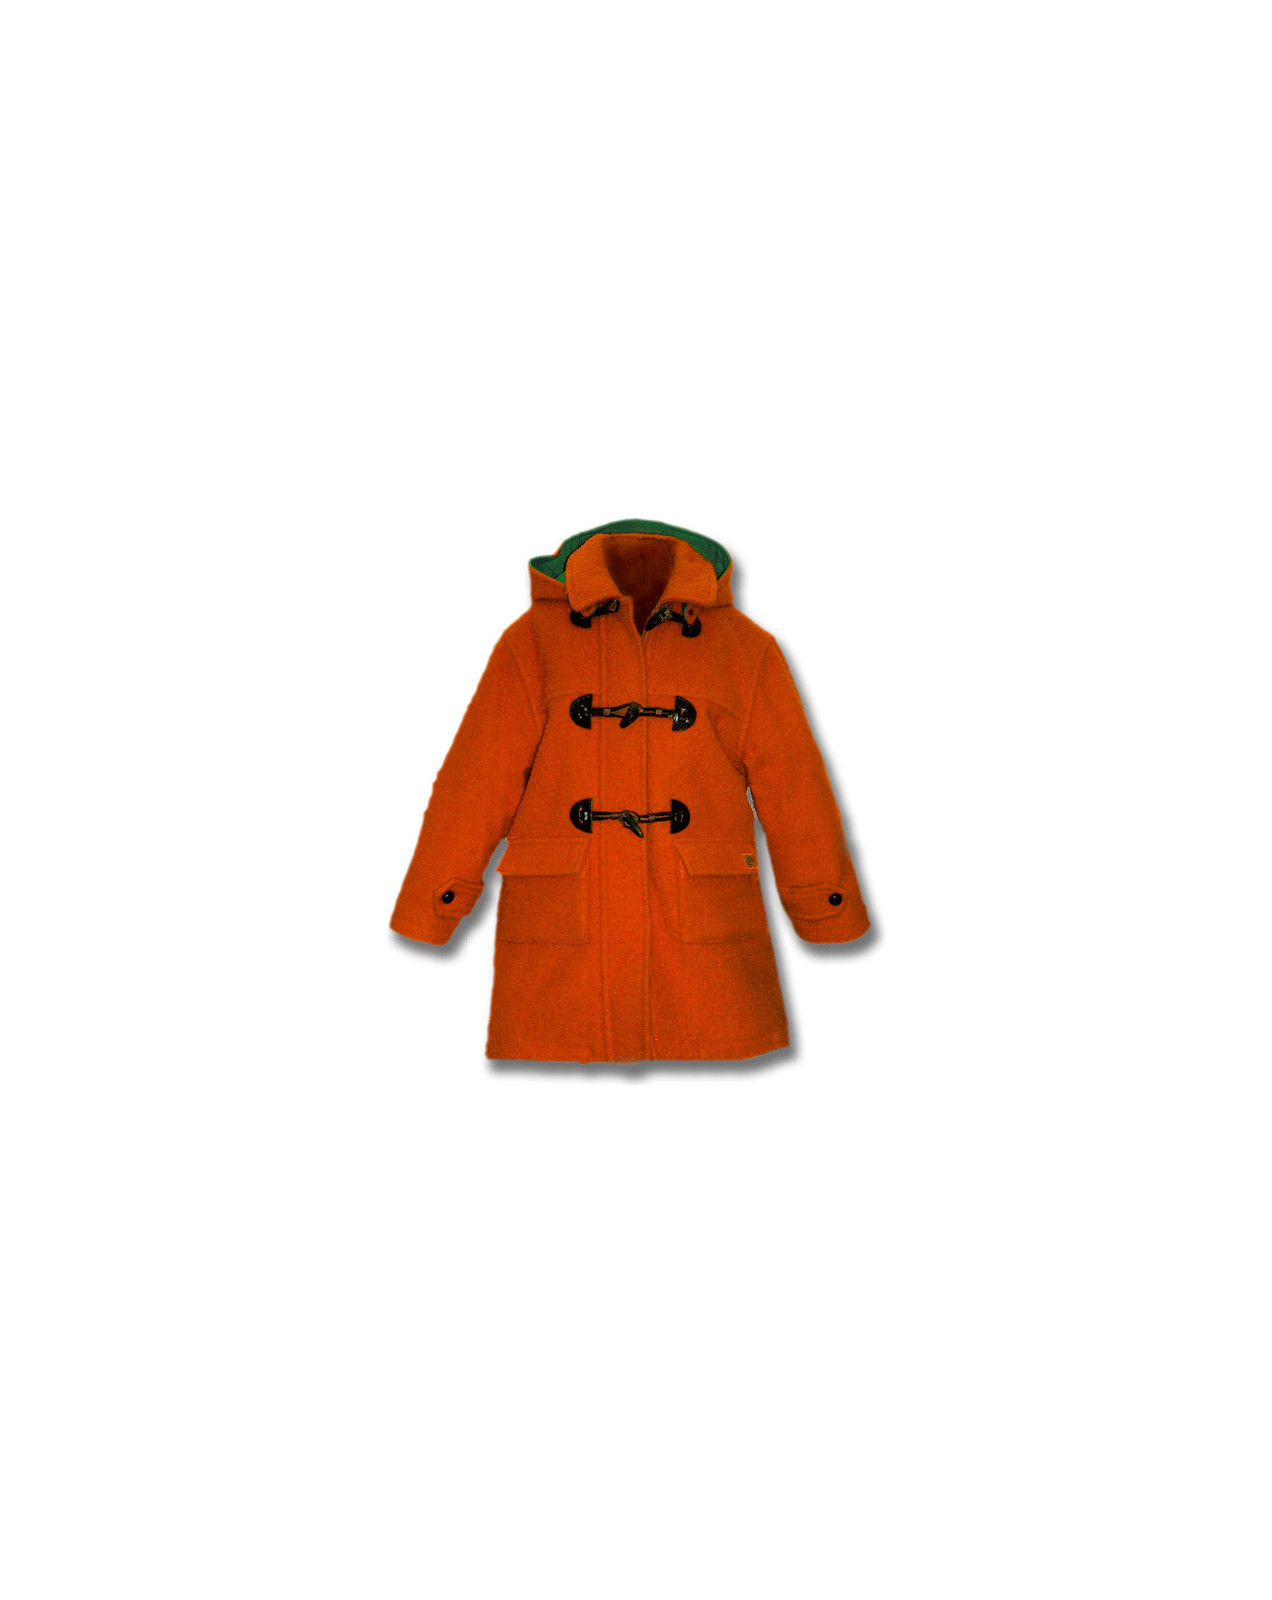 Un classico giaccone modello Montgomery per bambini con alamari .100% lana